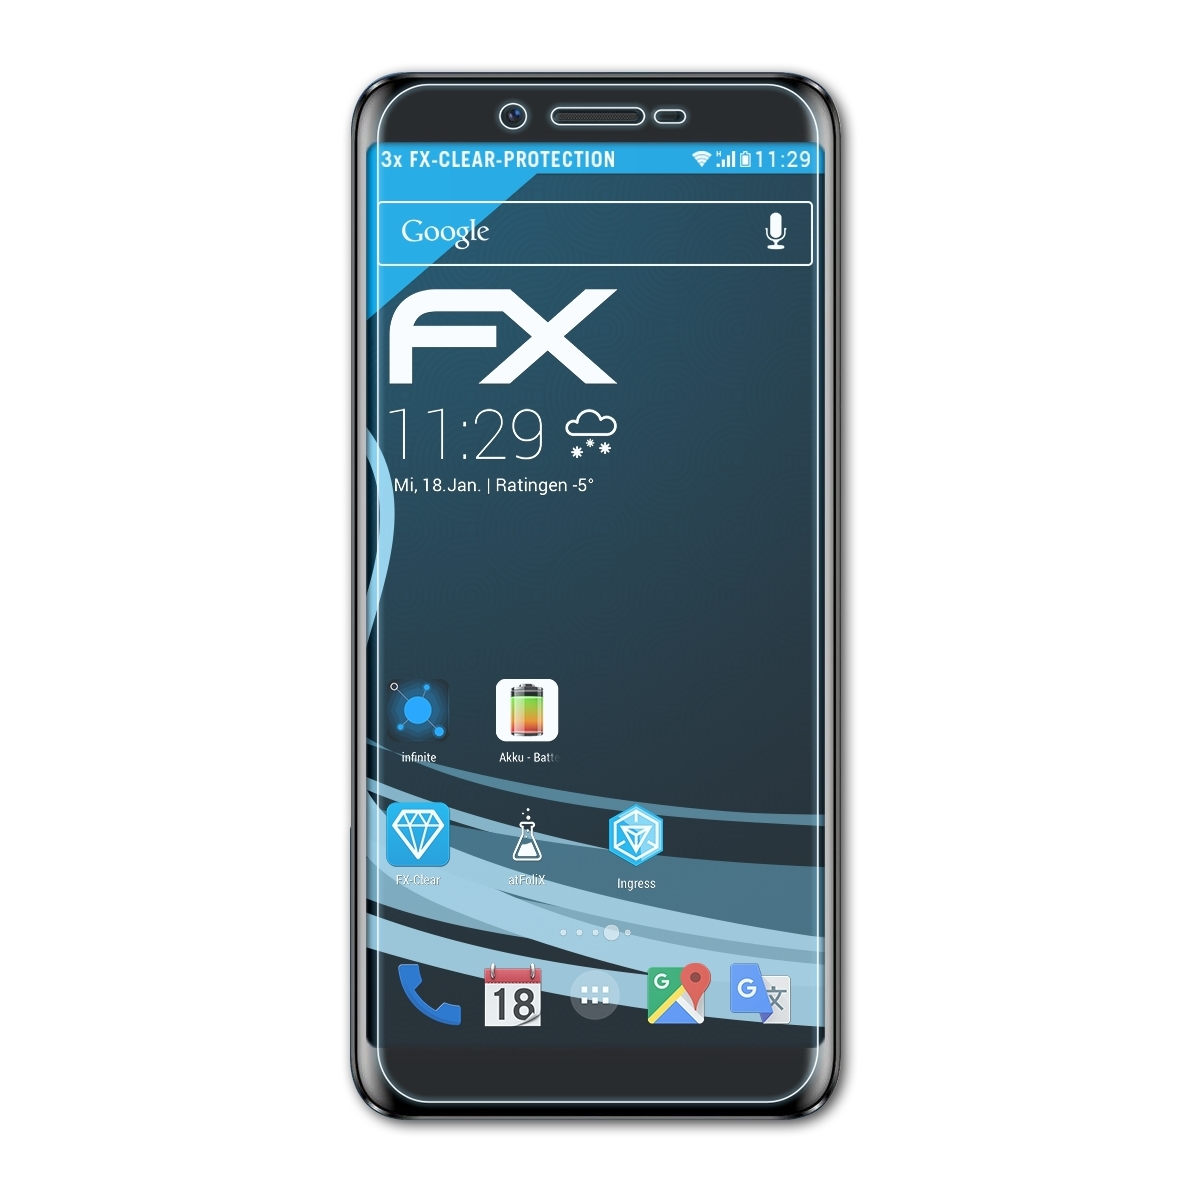 ATFOLIX 3x FX-Clear Displayschutz(für Doogee L) X60